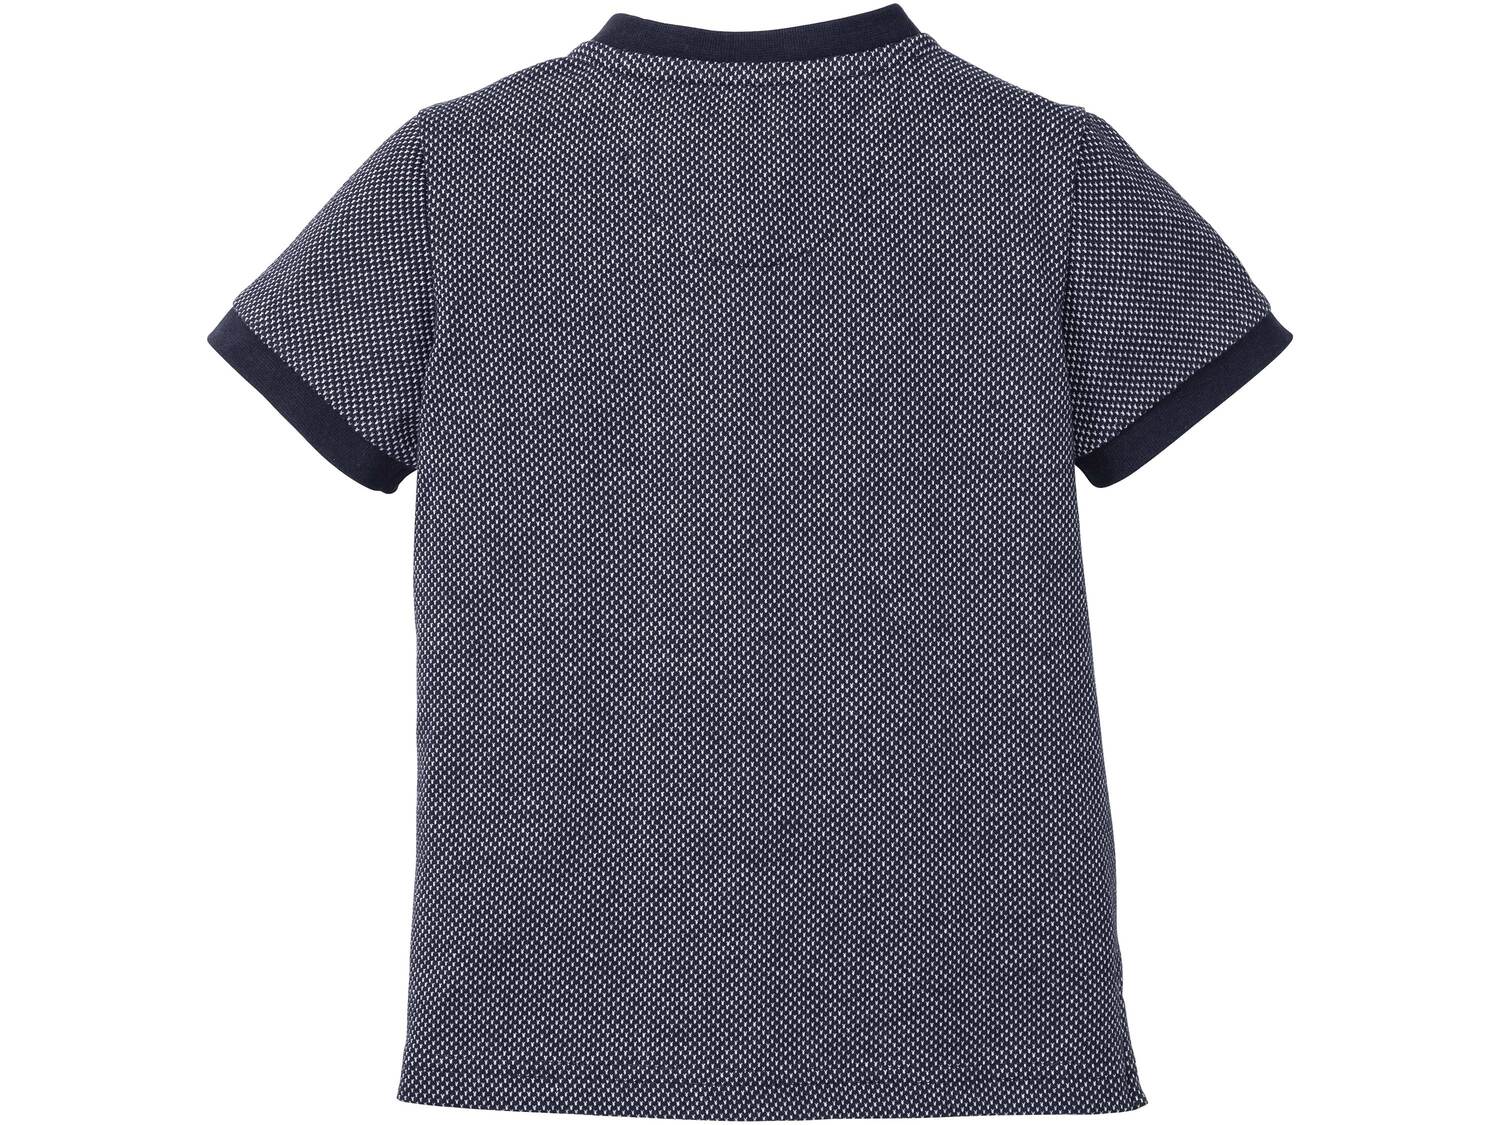 Koszulka chłopięca polo Lupilu, cena 14,99 PLN 
- 100% bawełny
- wysokiej jakości ...